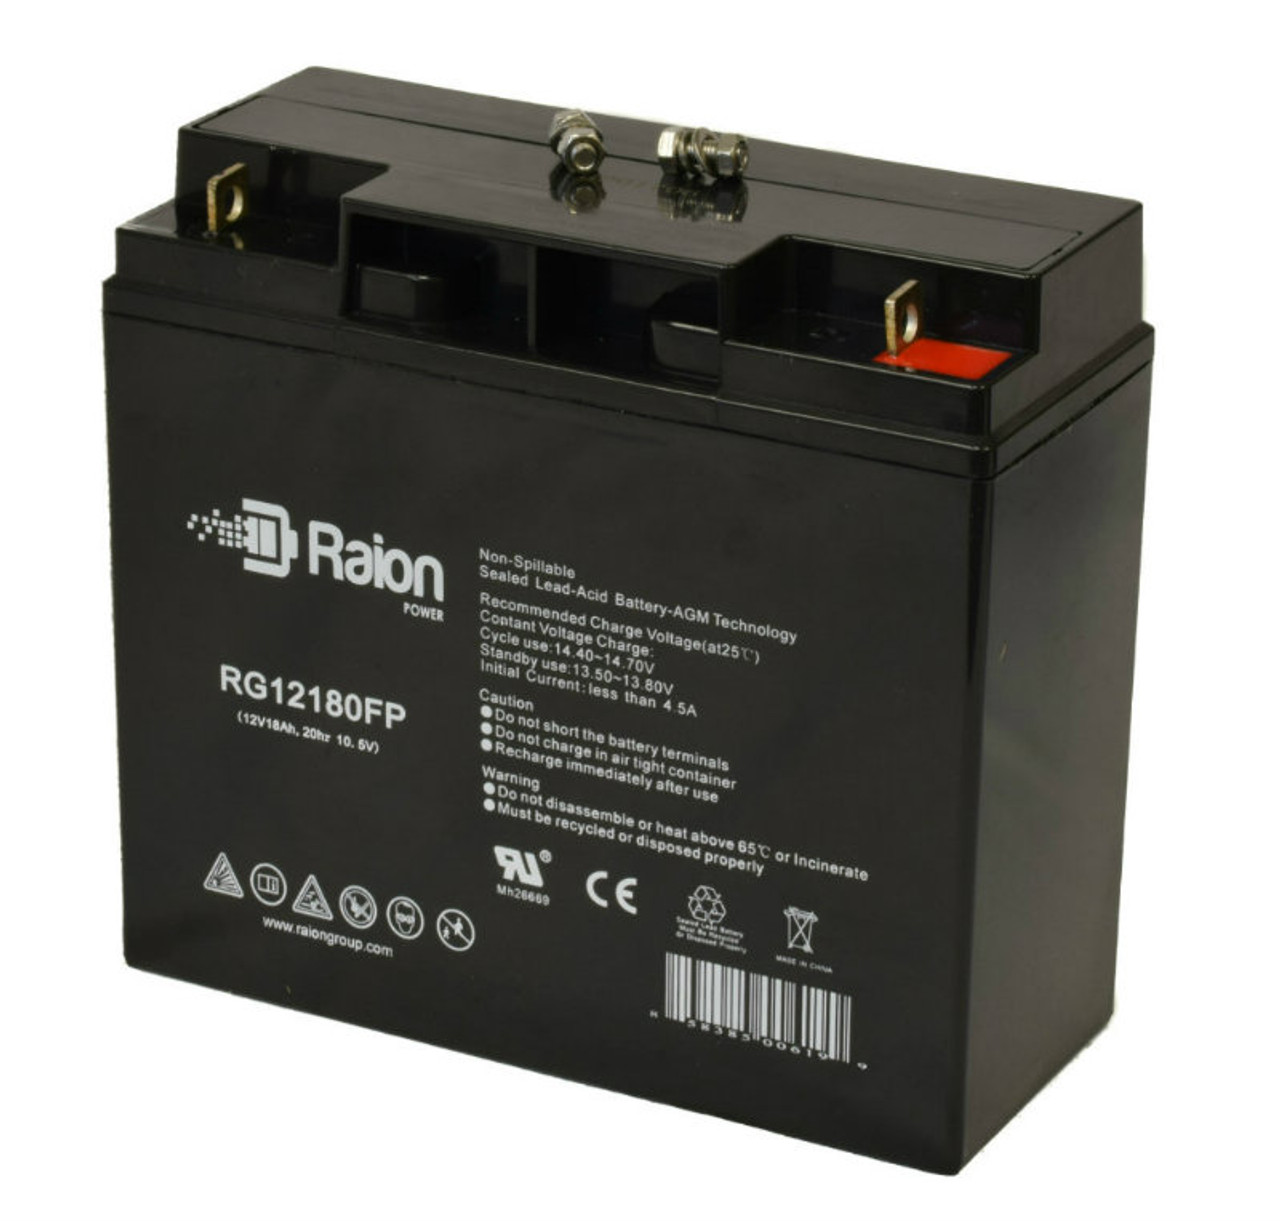 Raion Power Replacement 12V 18Ah Battery for Firman 7125 Watt H05753 Generator - 1 Pack